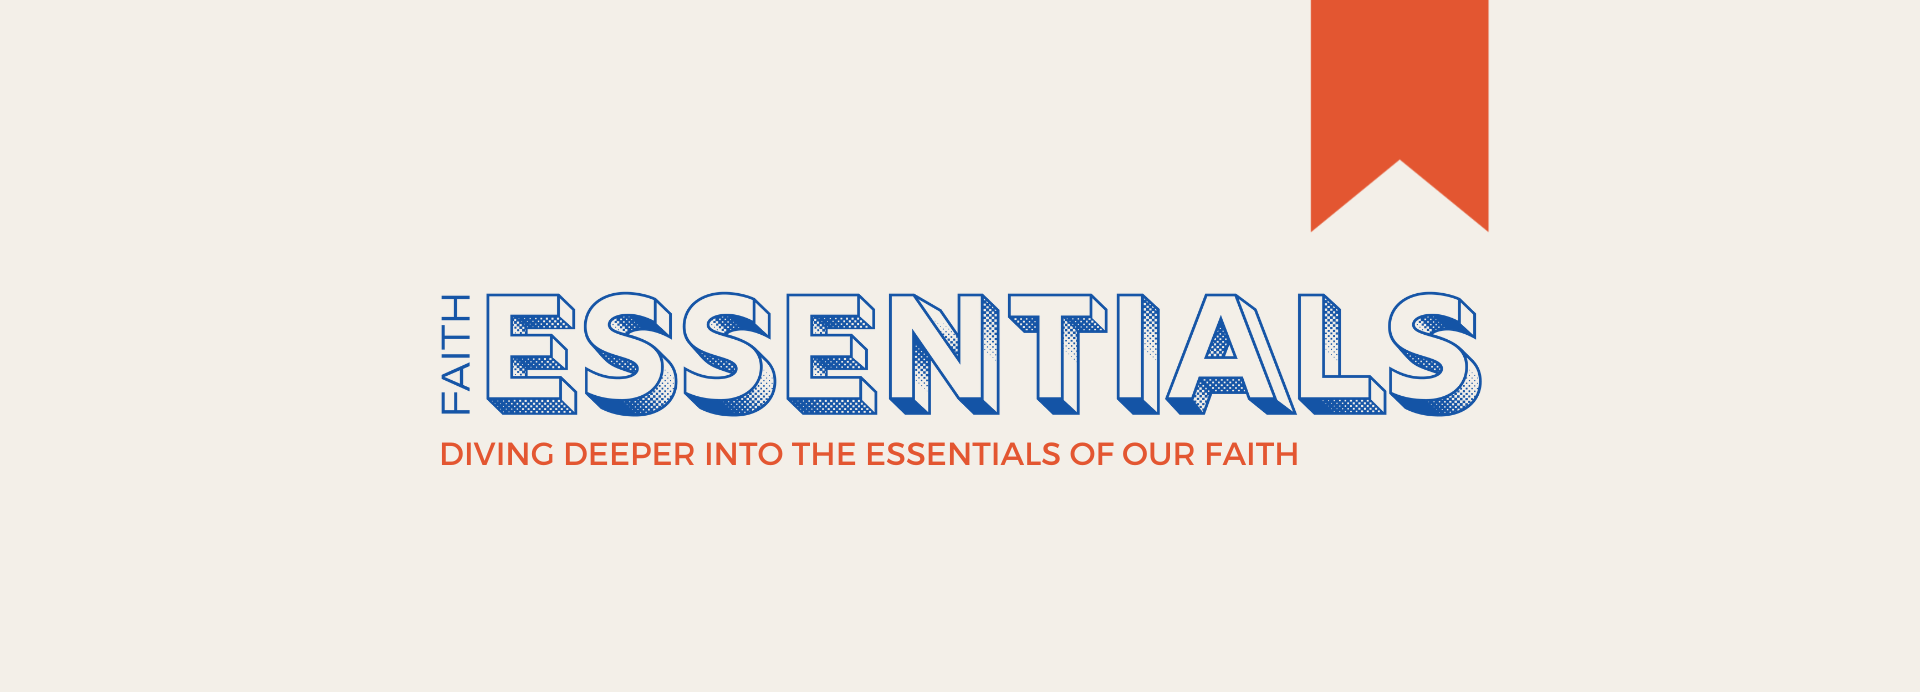 Faith Essentials